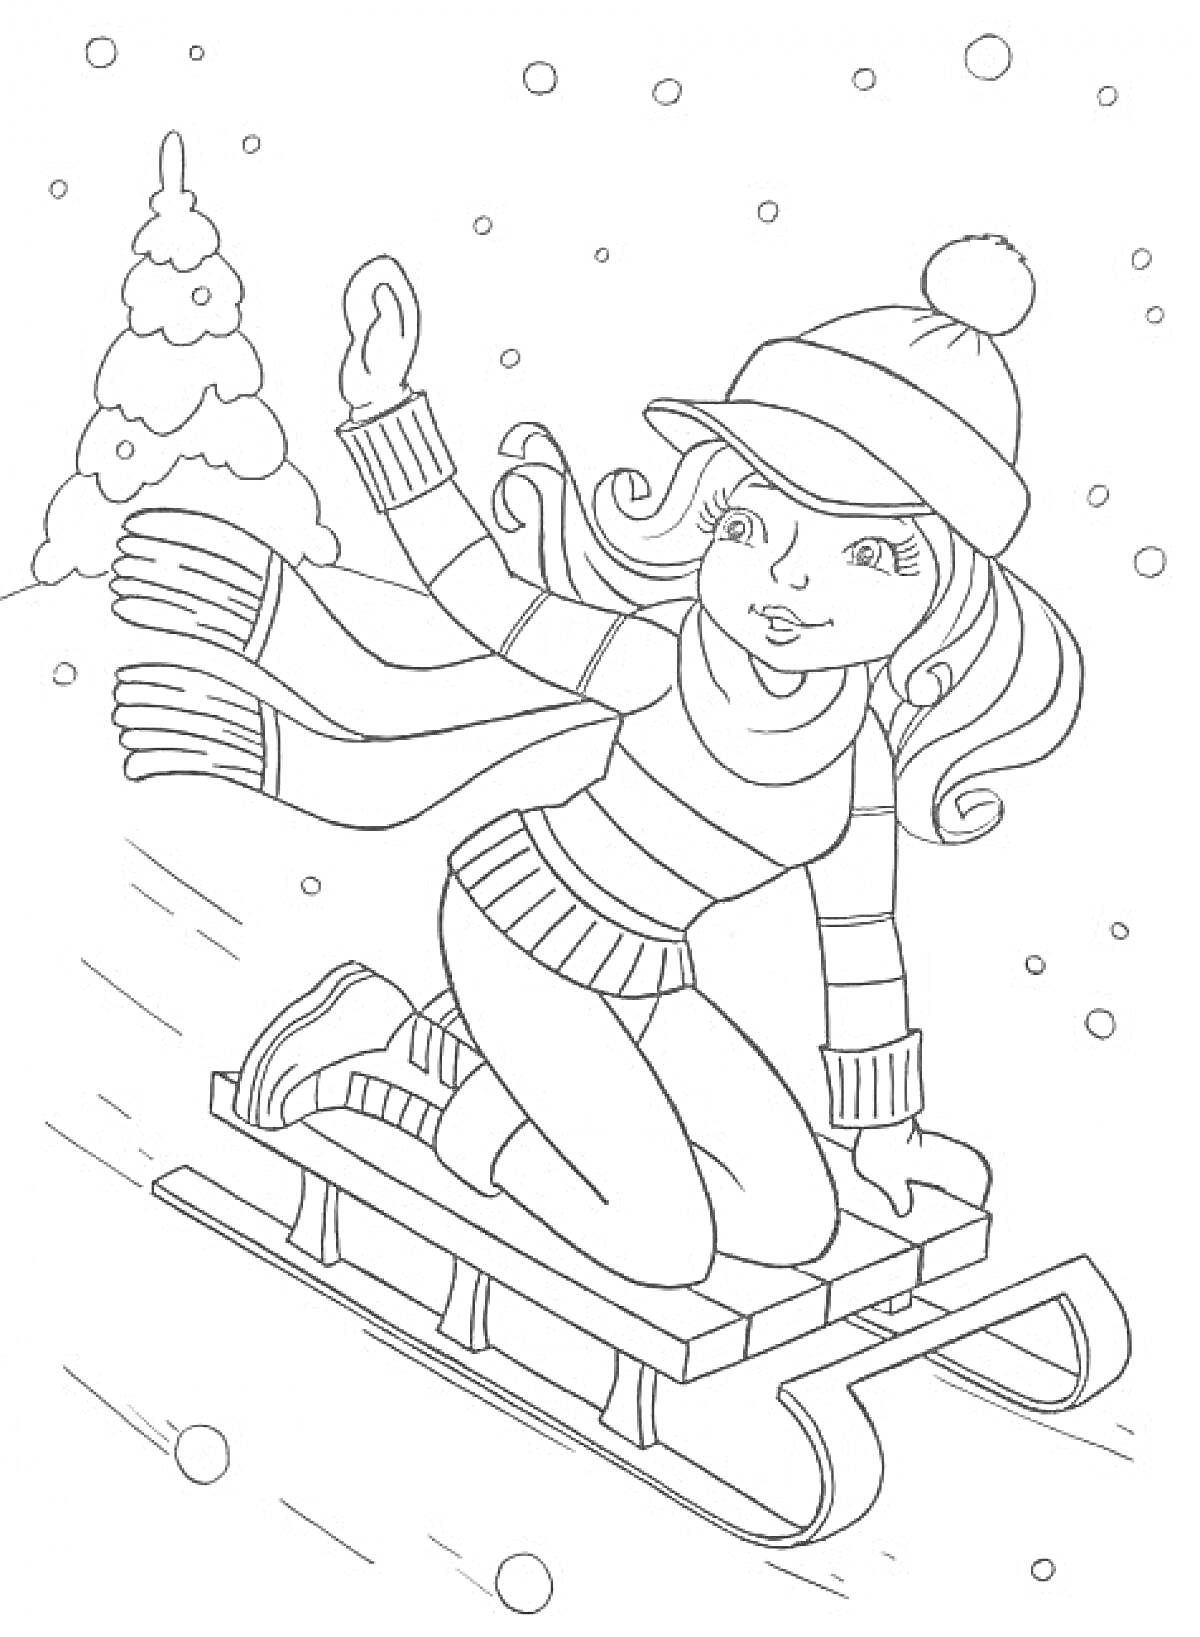 Девочка в шапке с помпоном спускается на санках по снегу мимо заснеженной ёлки, вокруг падает снег